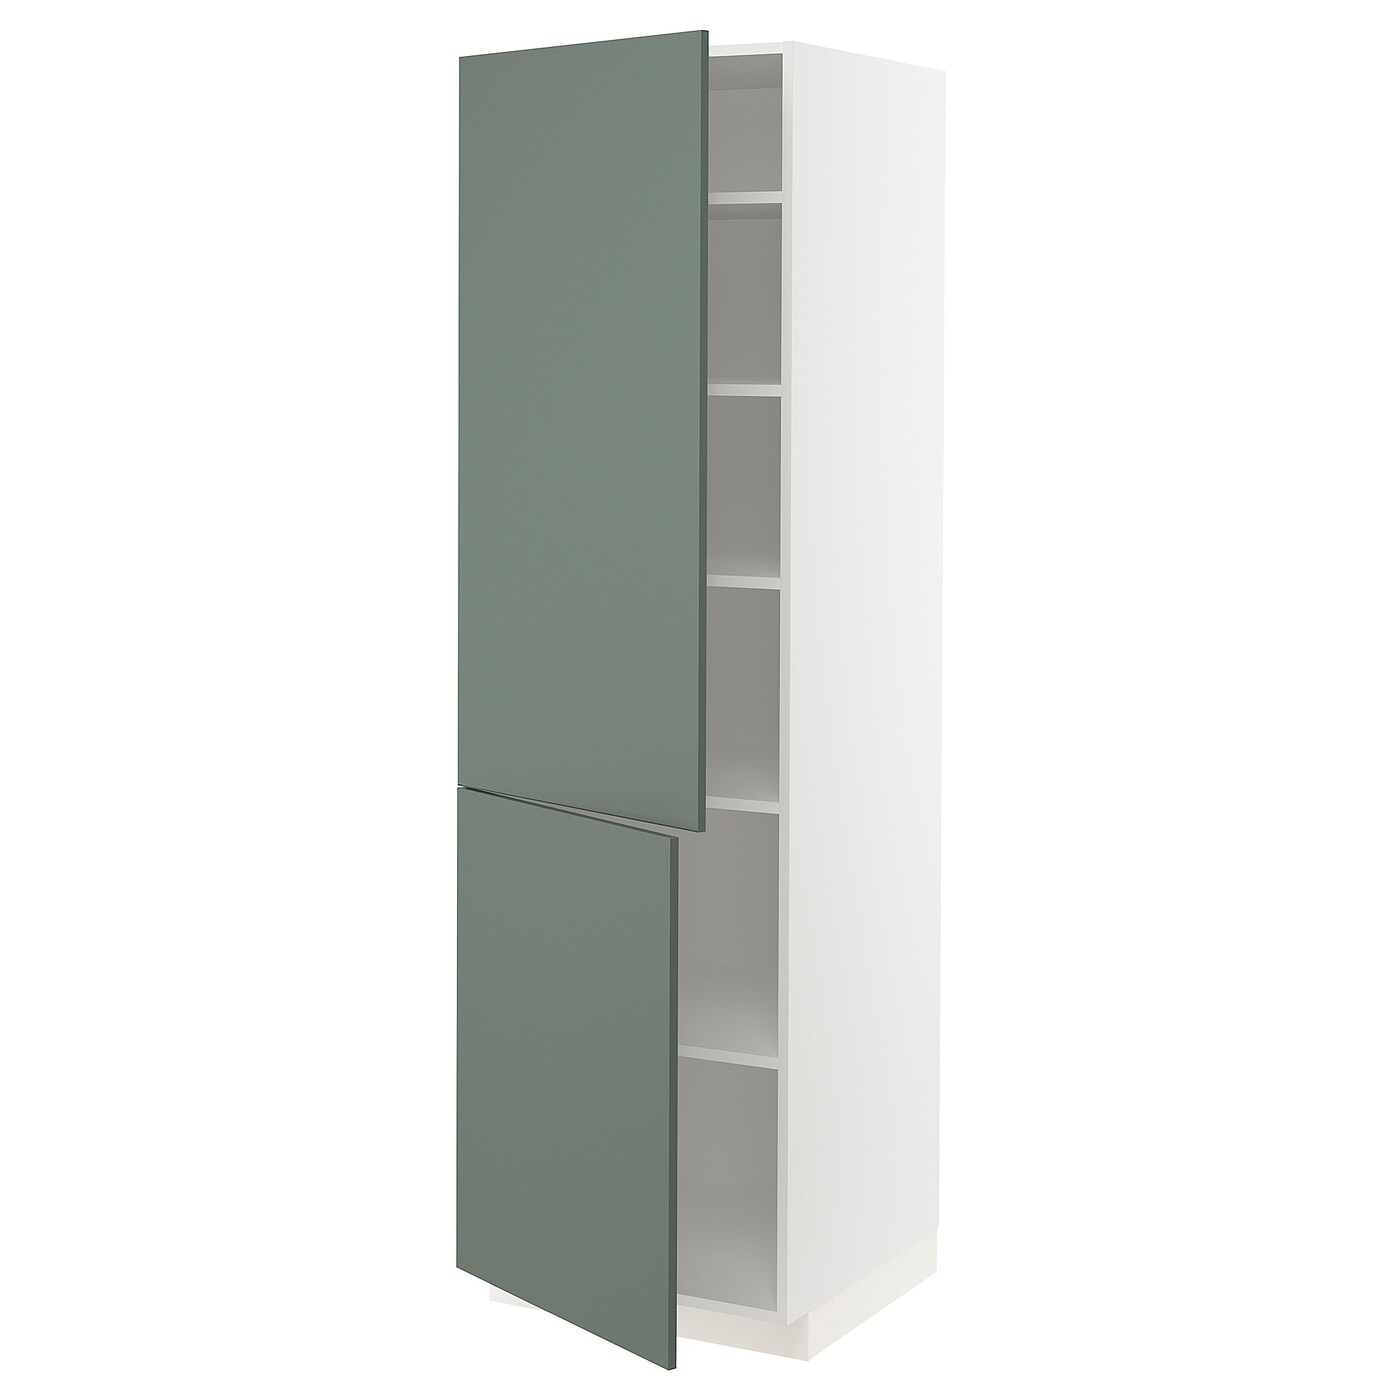 Высокий кухонный шкаф с полками - IKEA METOD/МЕТОД ИКЕА, 200х60х60 см, белый/темно-зеленый